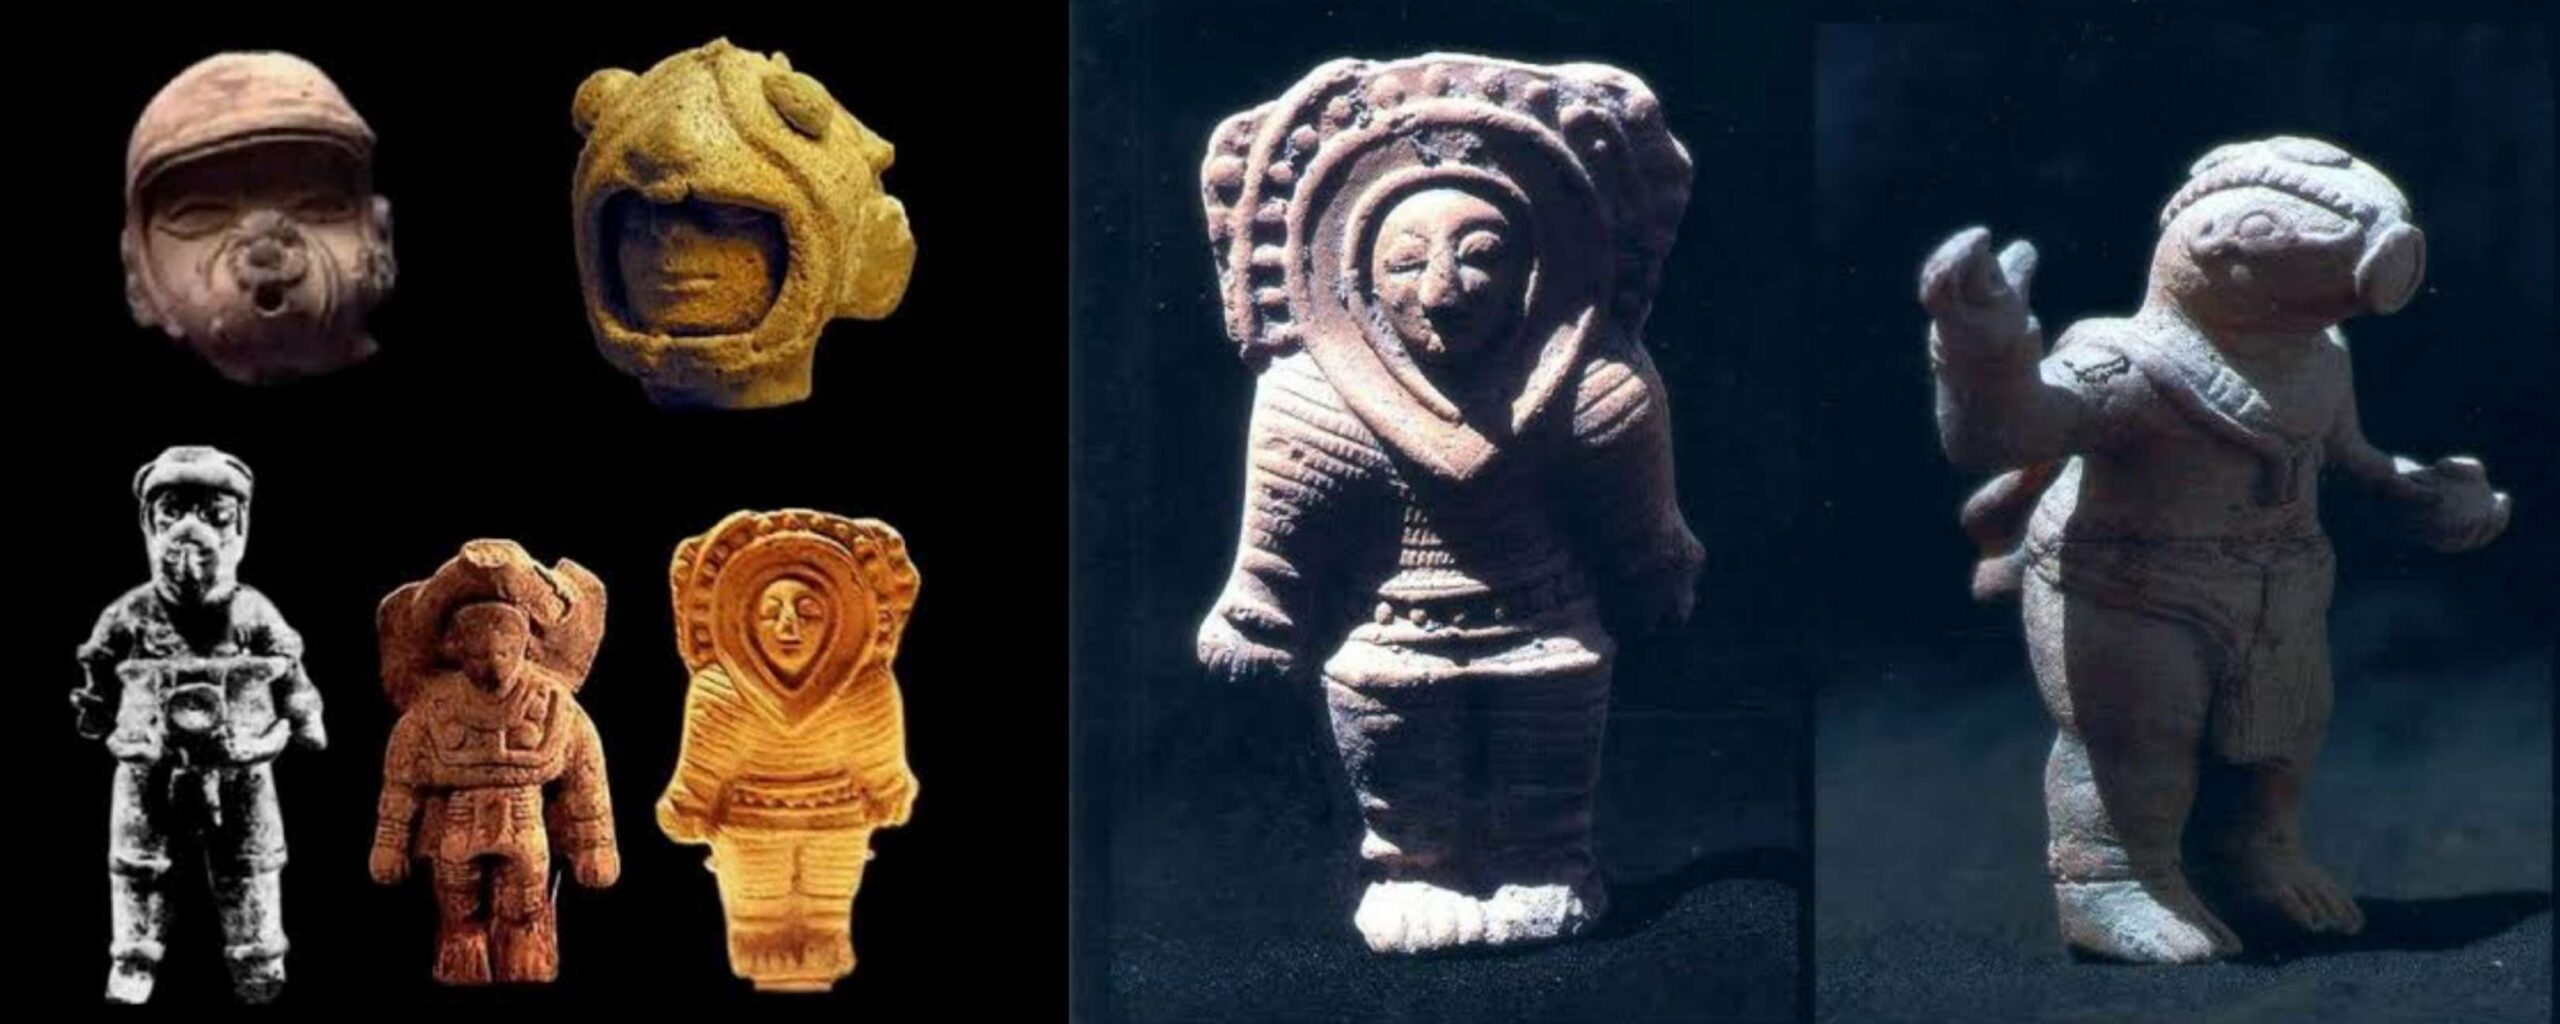 Apakah orang Maya dikunjungi oleh astronot kuno? 3